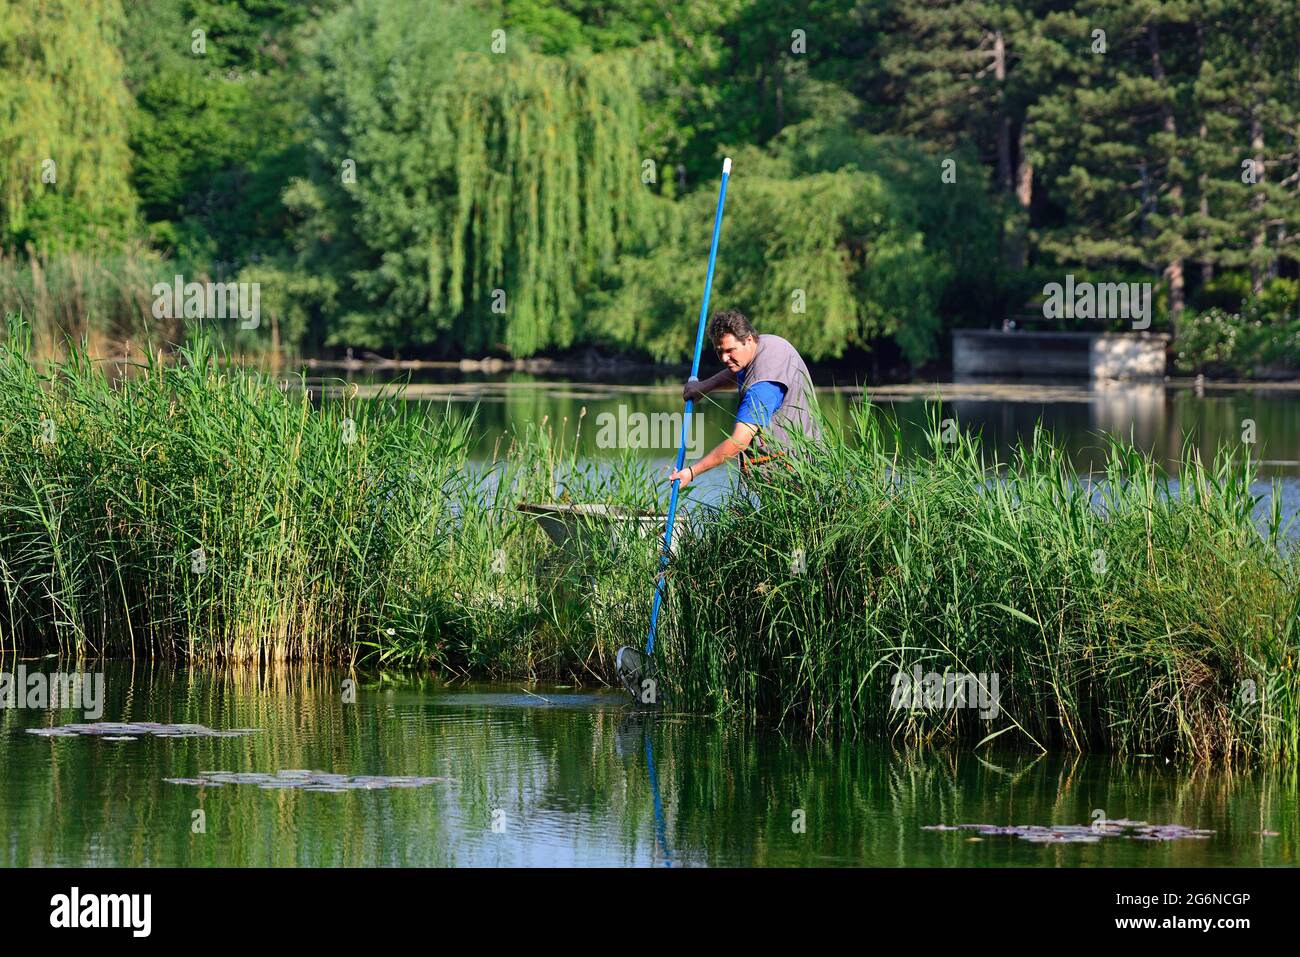 Vienne, Autriche. Le jardinier nettoie l'eau du parc aquatique de floridsdorf Banque D'Images